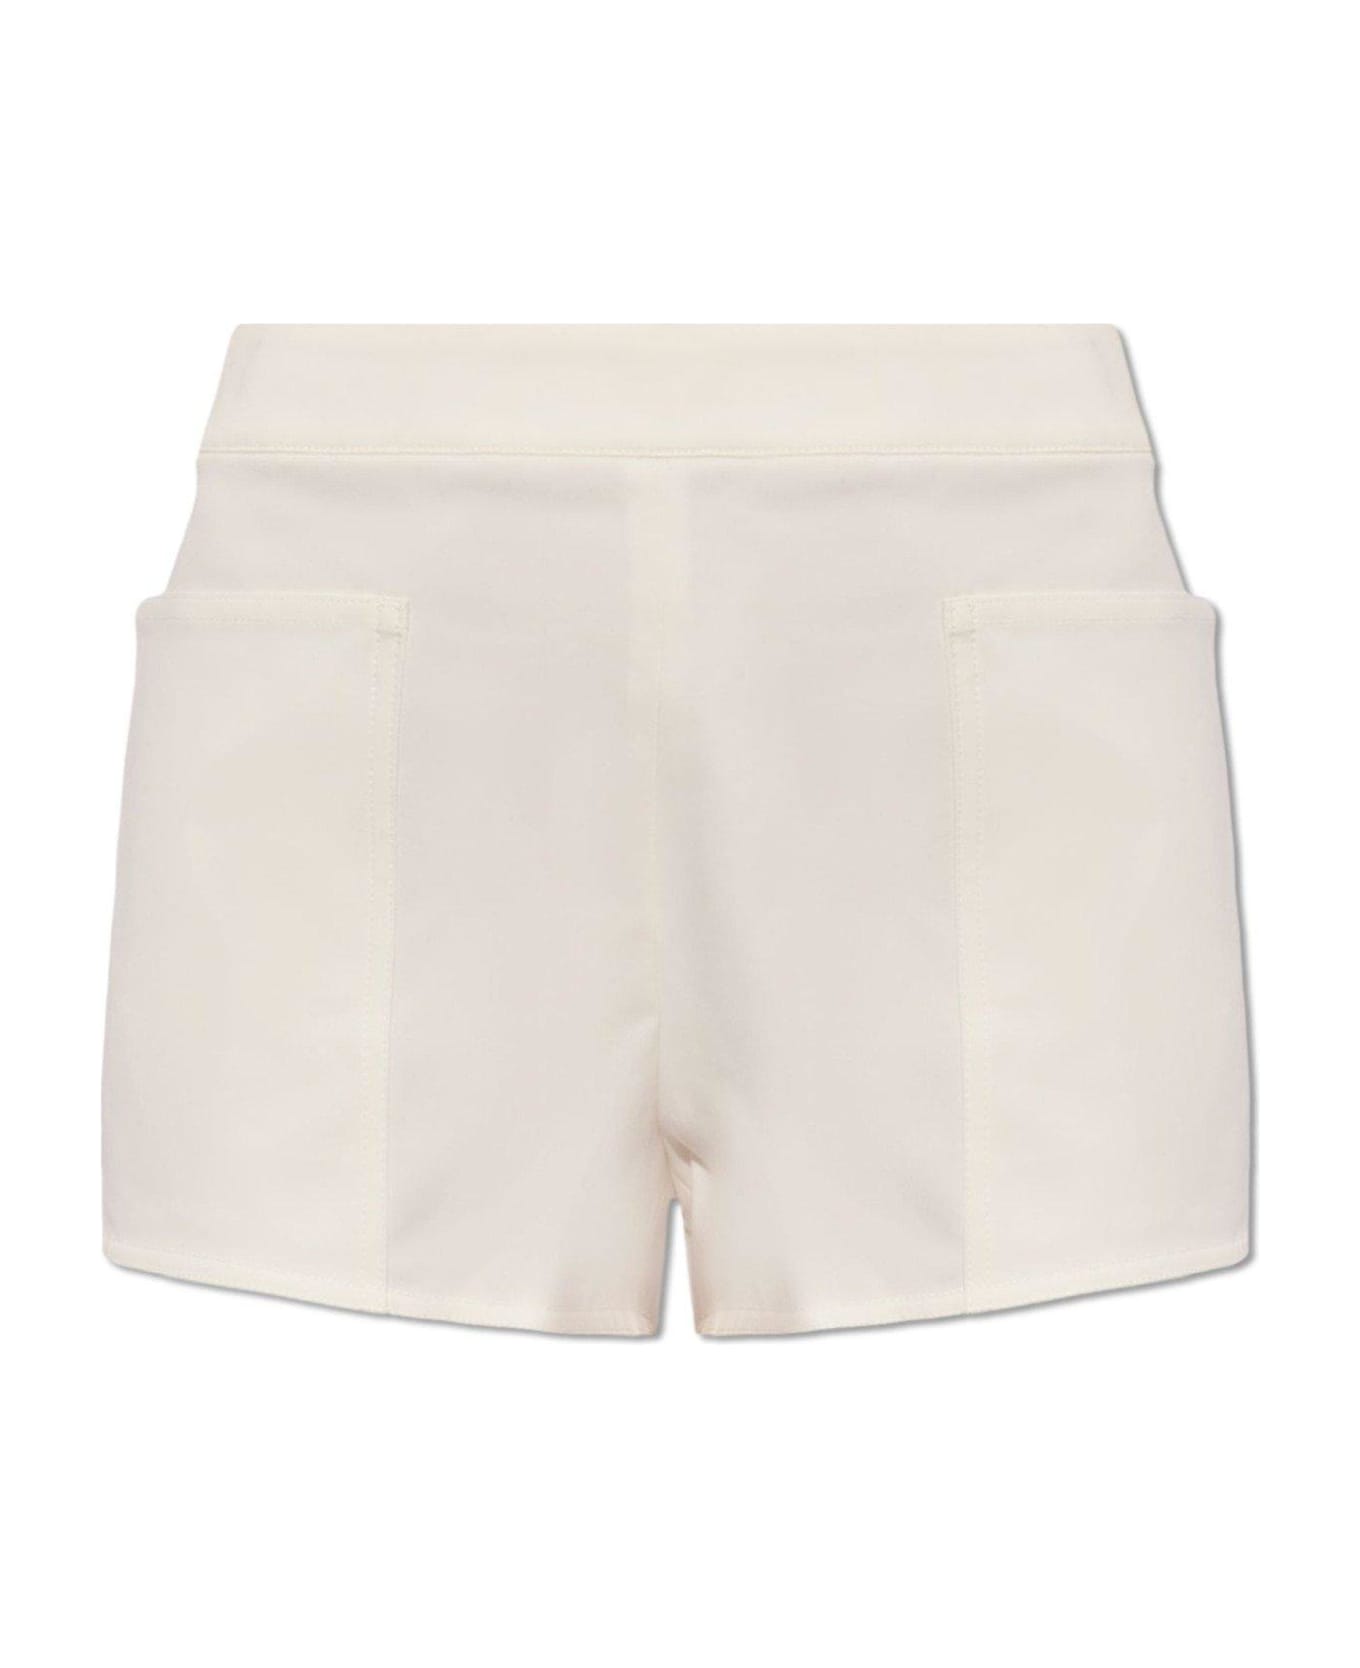 Max Mara Riad High Waist Shorts - Bianco